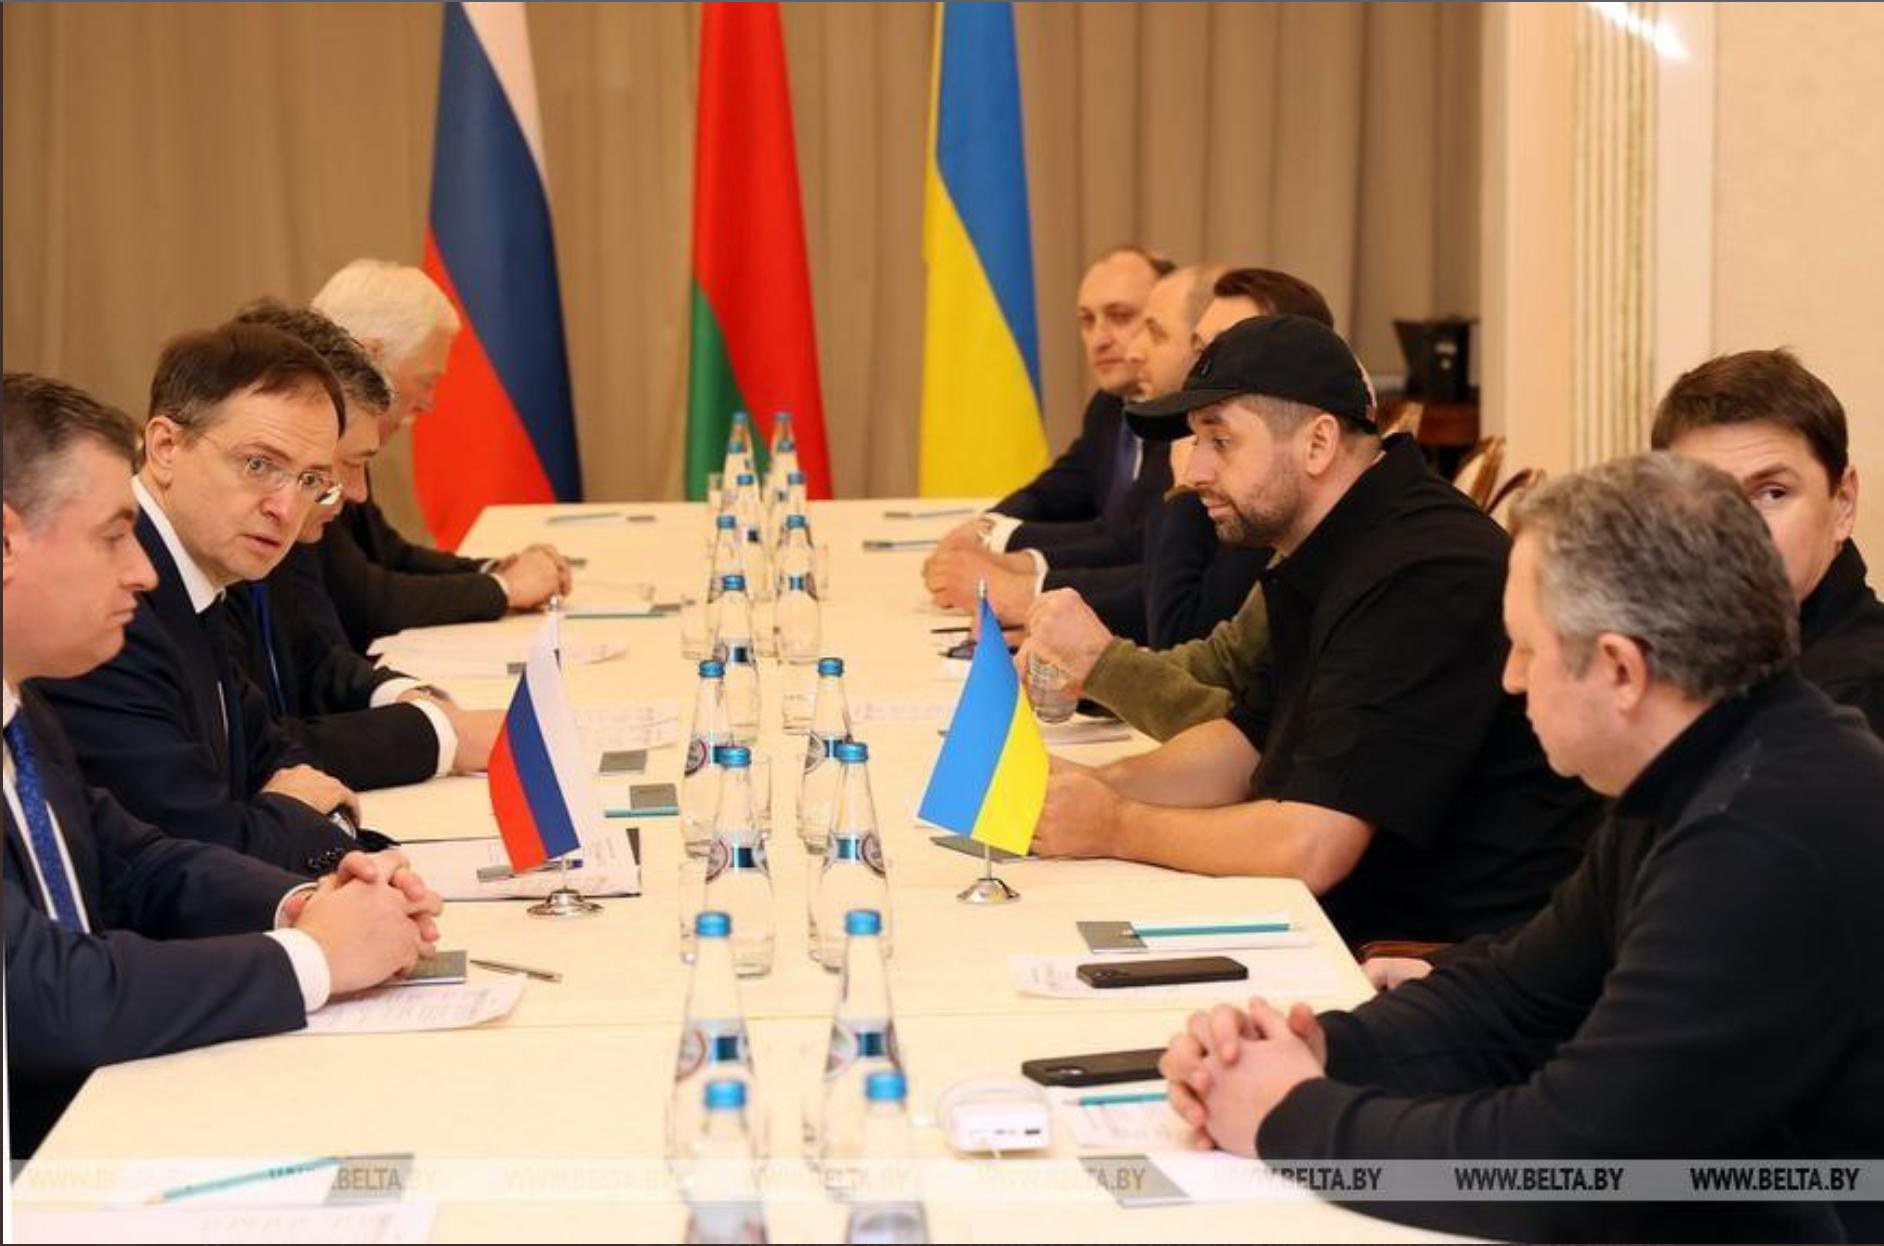 Ikoniczne zdjęcie z pierwszej rundy negocjacji delegacji rosyjskiej (z lewej) i ukraińskiej, 28 lutego 2022. W czapce z daszkiem David Arakhamia - szef parlamentarnej frakcji partii Zełenskiego Sługa Narodu